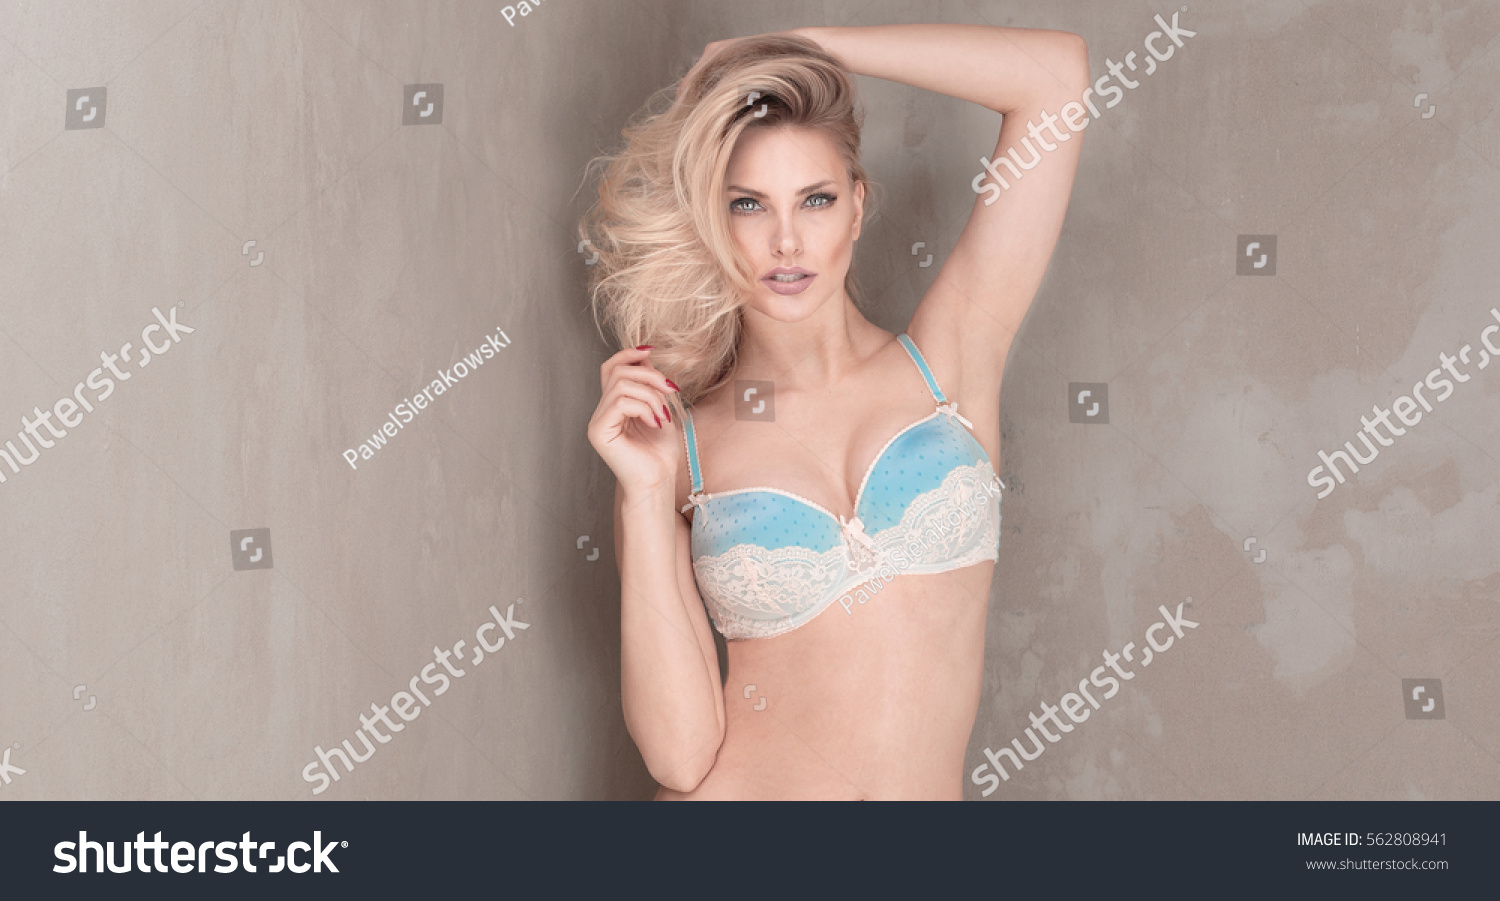 Sensual blonde woman posing in lingerie. #562808941